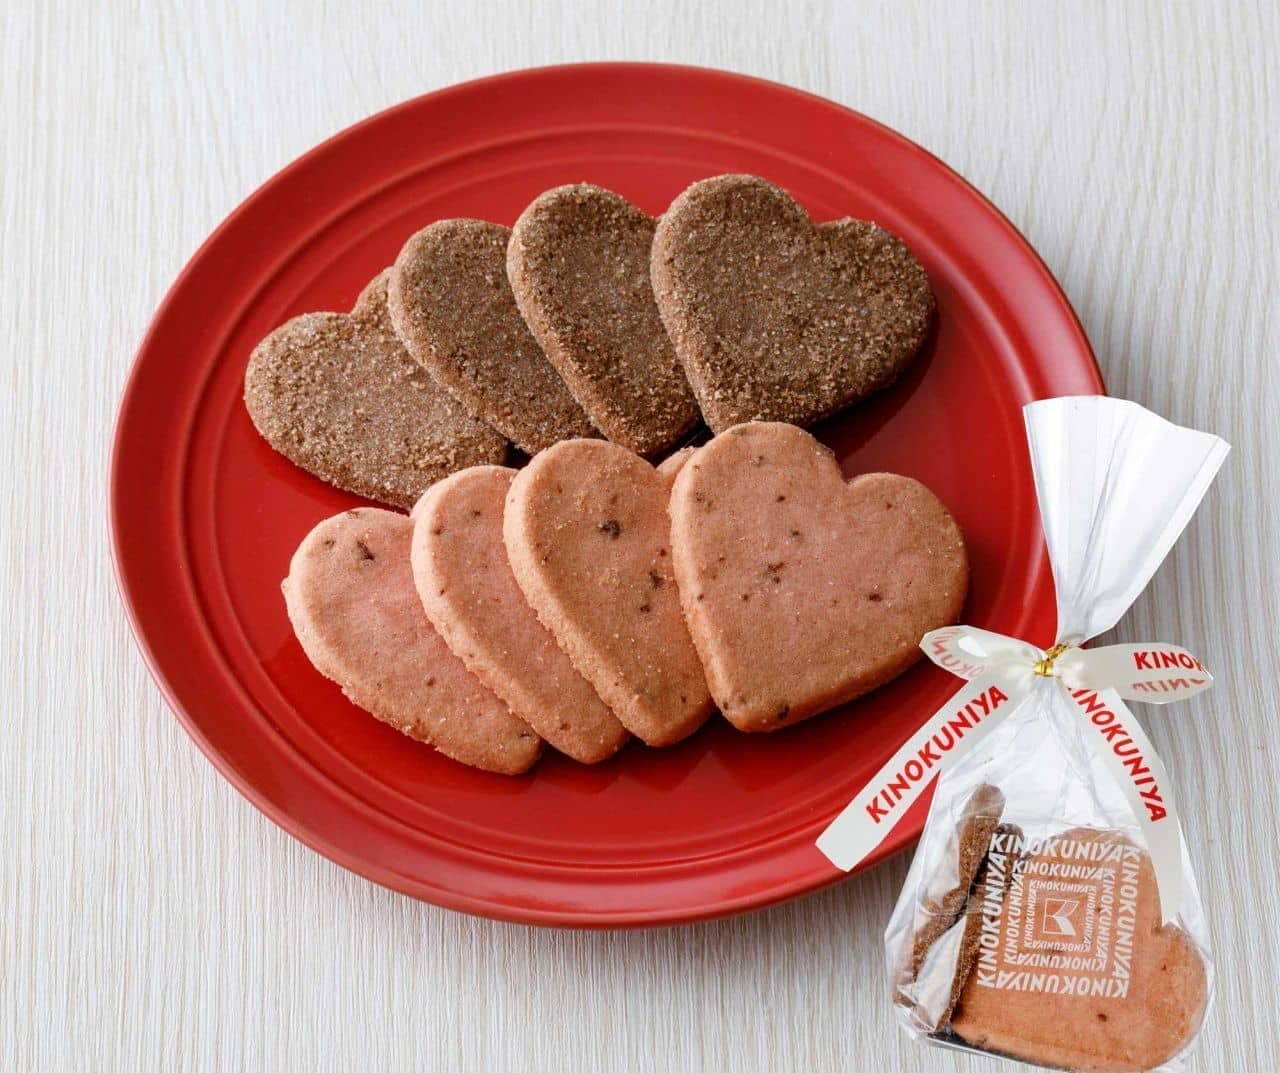 KINOKUNIYA Heart Cookies